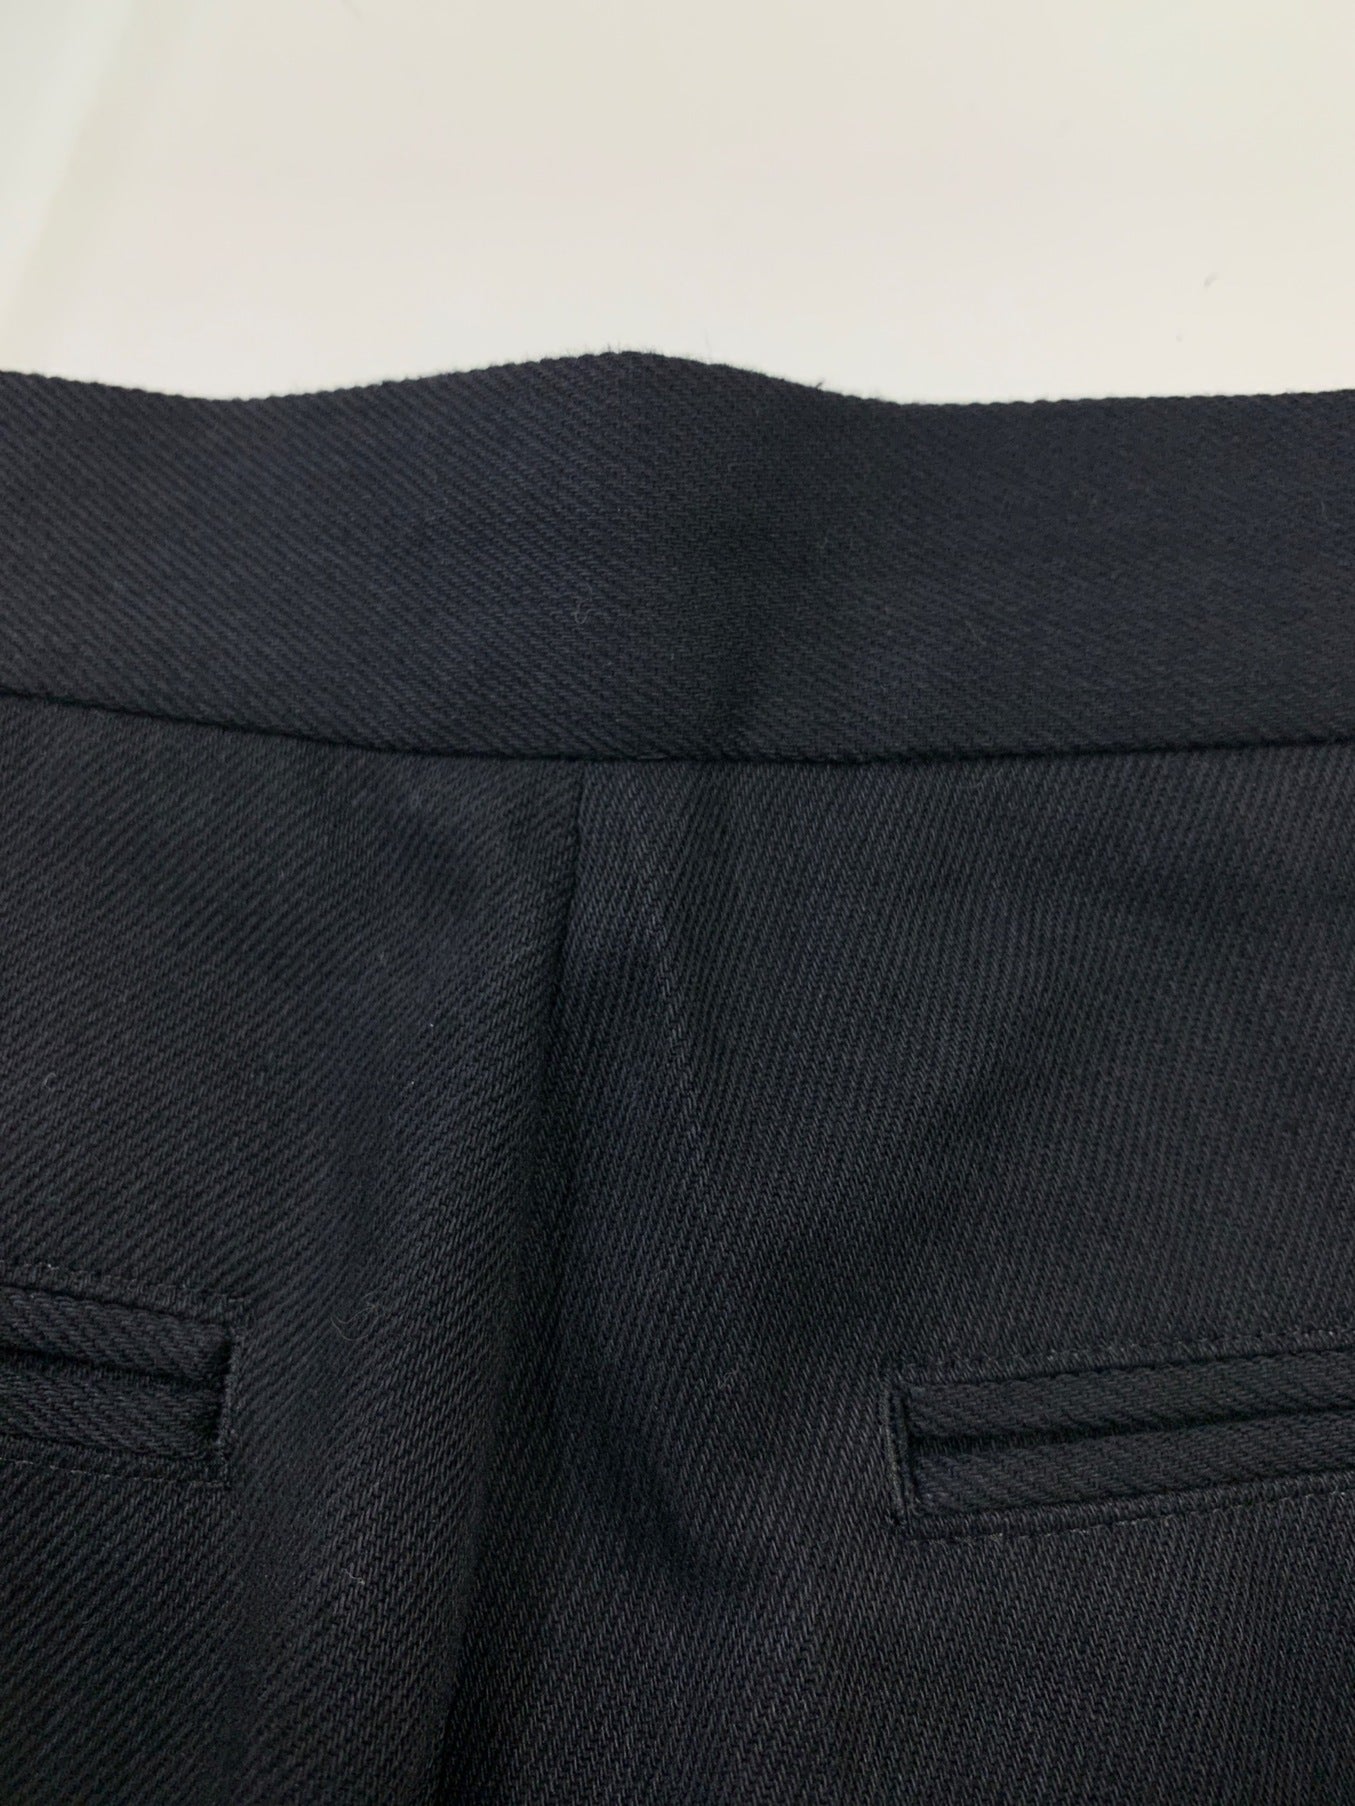 กฎระเบียบ yohji yamamoto กางเกงเรียวผ้าขนสัตว์ผสม / กางเกงที่ซ่อนอยู่ FK-P56-115-1A